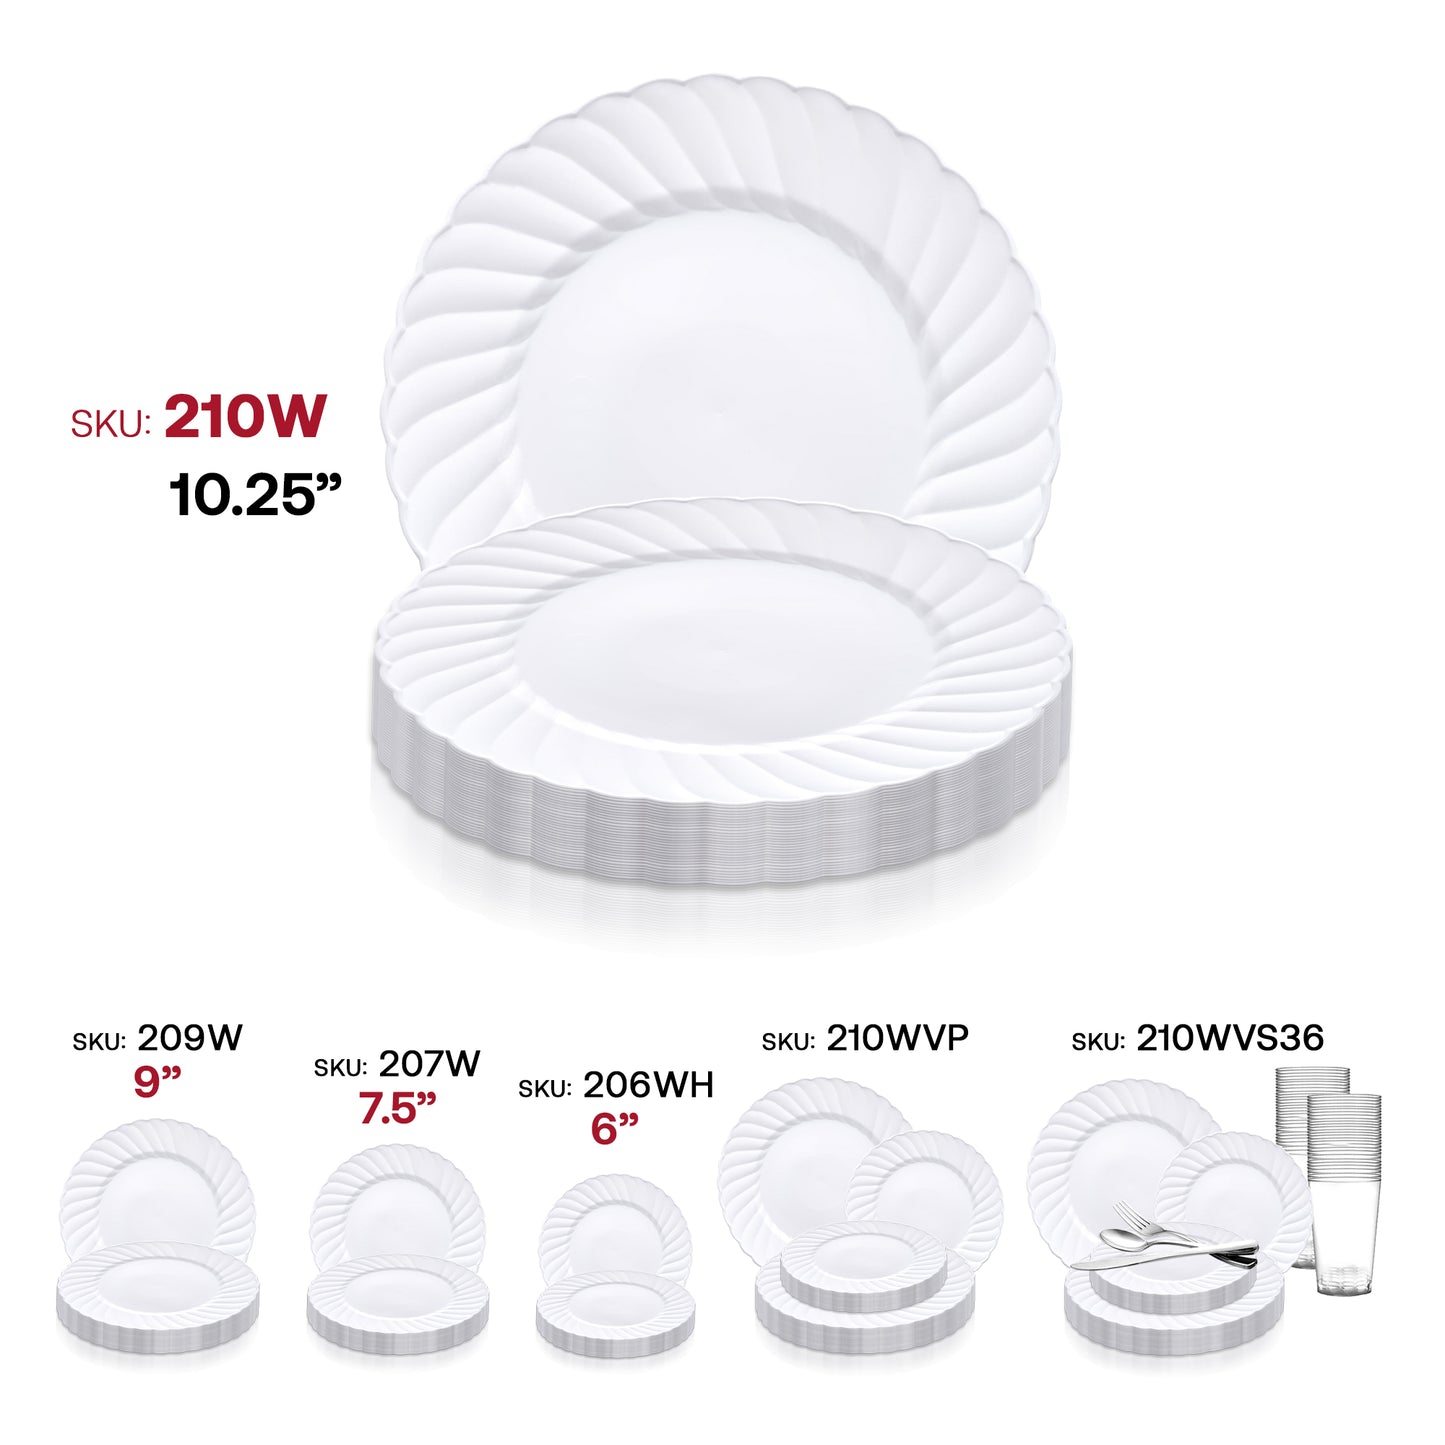 White Flair Plastic Dinner Plates (10.25") SKU | The Kaya Collection